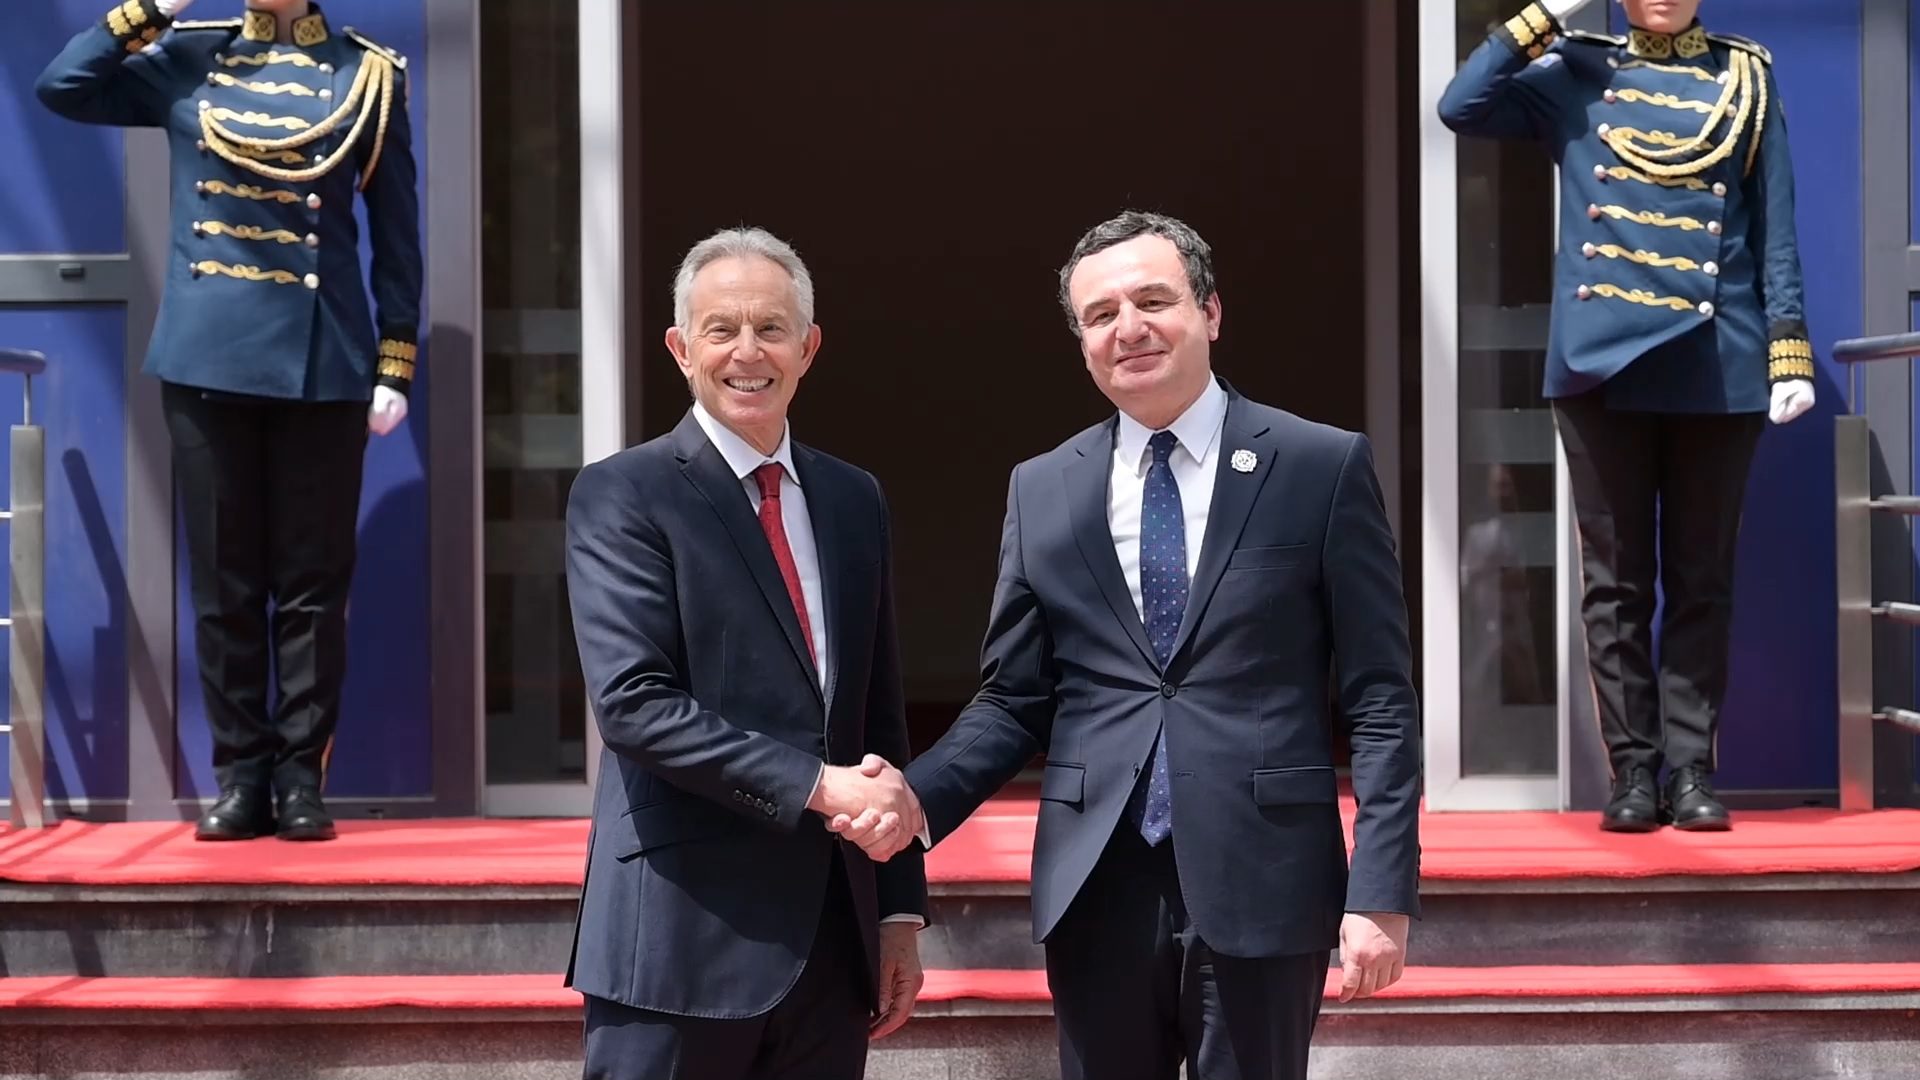 Blair letër Kurtit: Ka qenë nder të vizitoj Kosovën në 25 vjetorin e Çlirimit, mezi pres t’iu takoj sërish